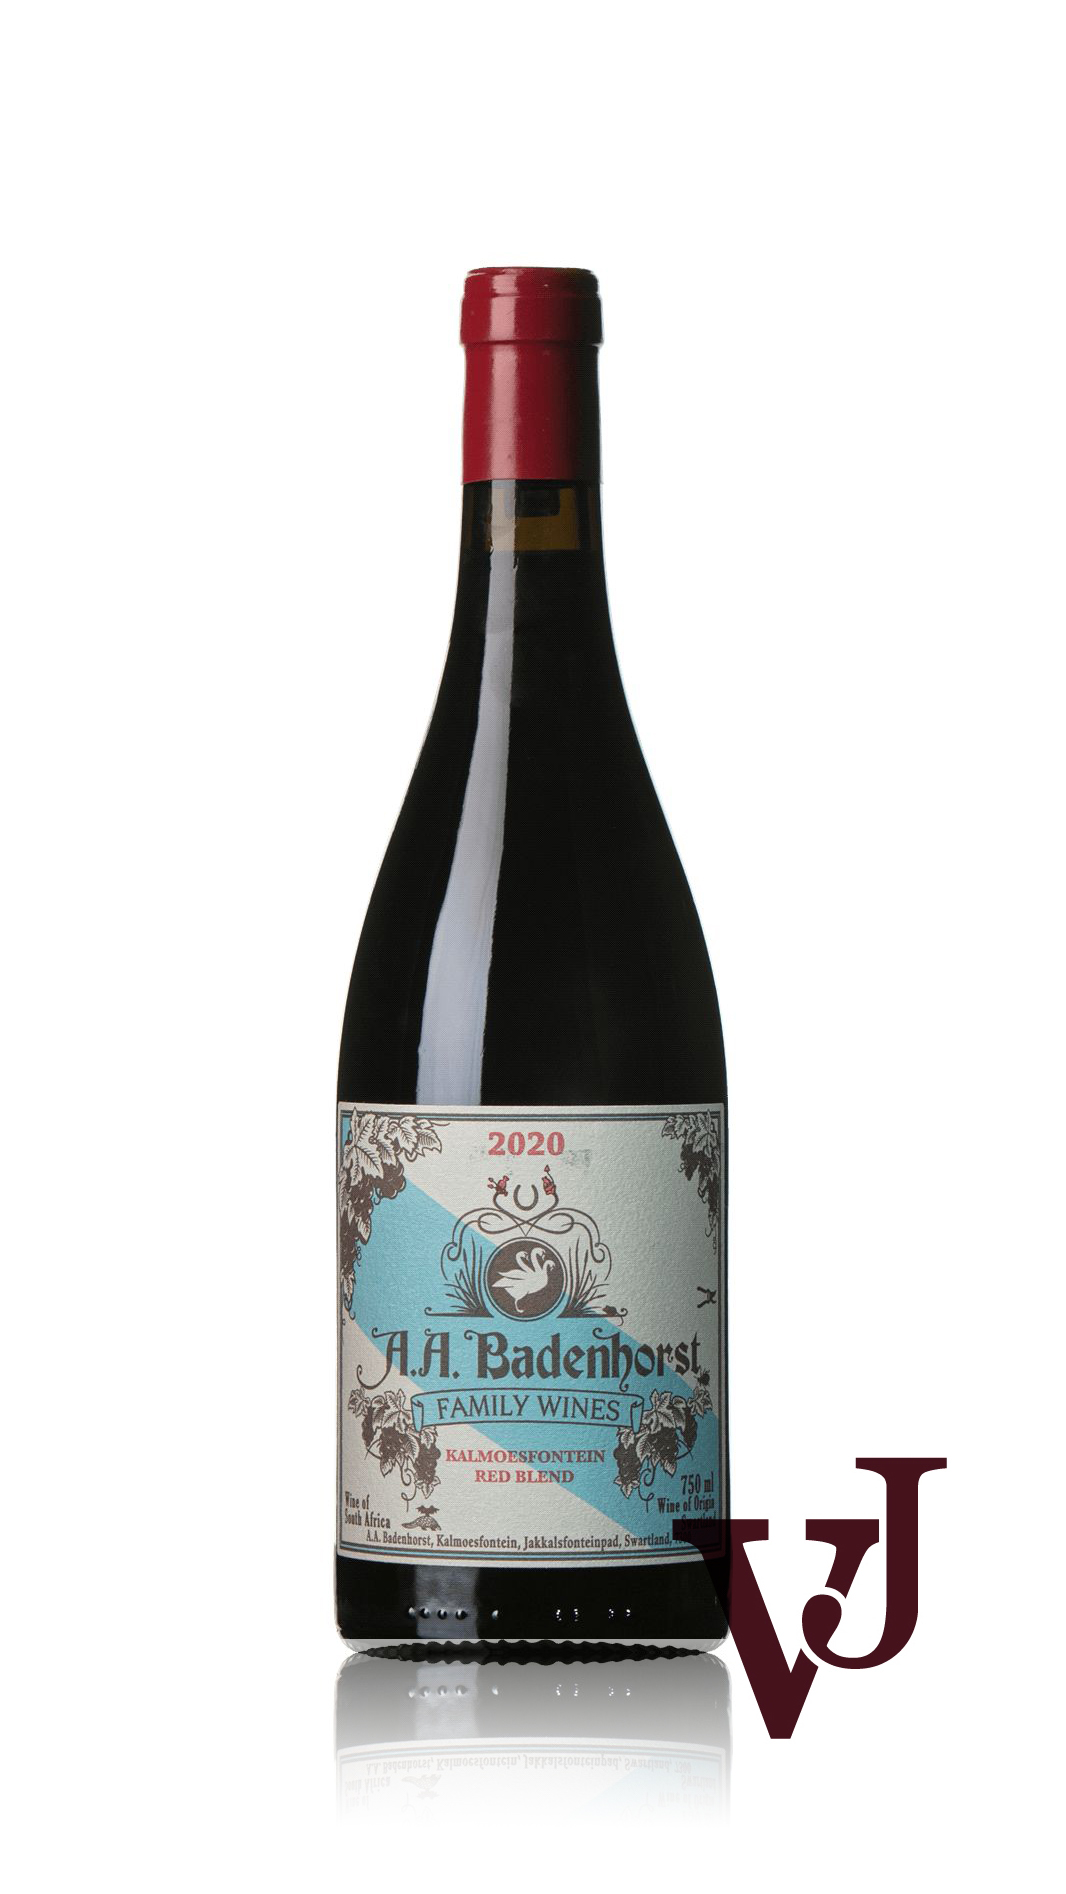 Rött Vin - Badenhorst Family Wines Family Red 2020 artikel nummer 9302901 från producenten Badenhorst Family Wines från området Sydafrika